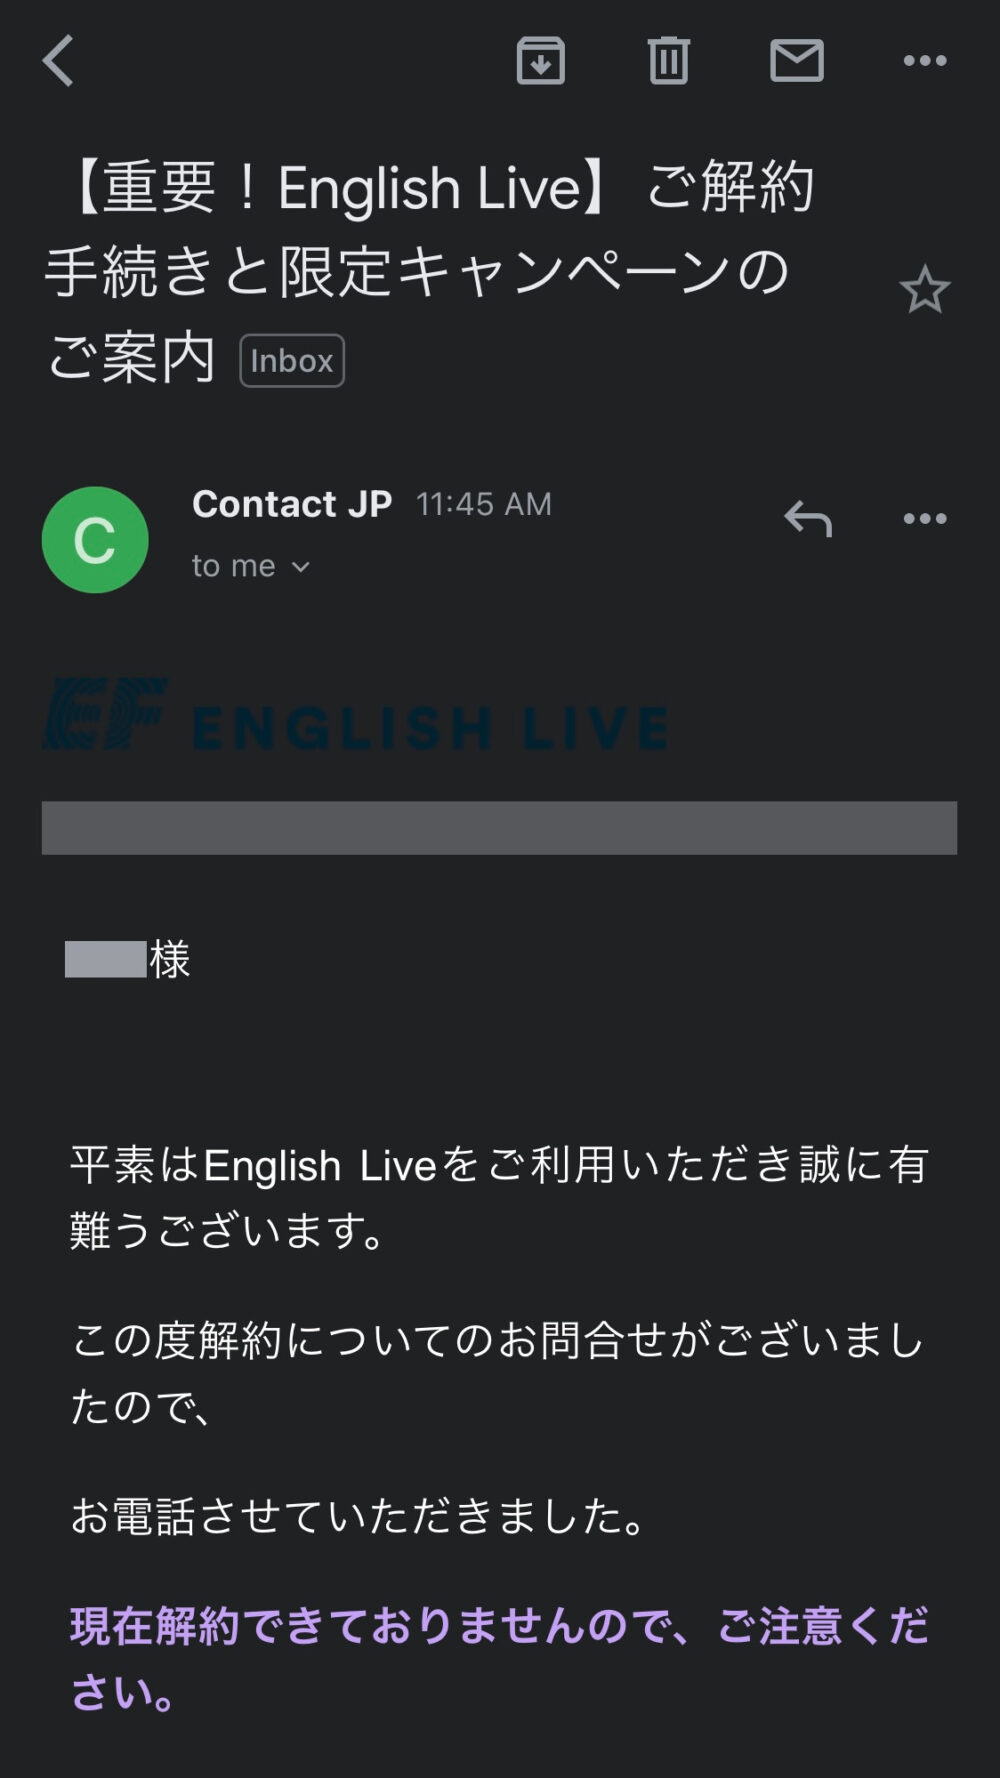 EF English Liveから届いた解約手続きメール